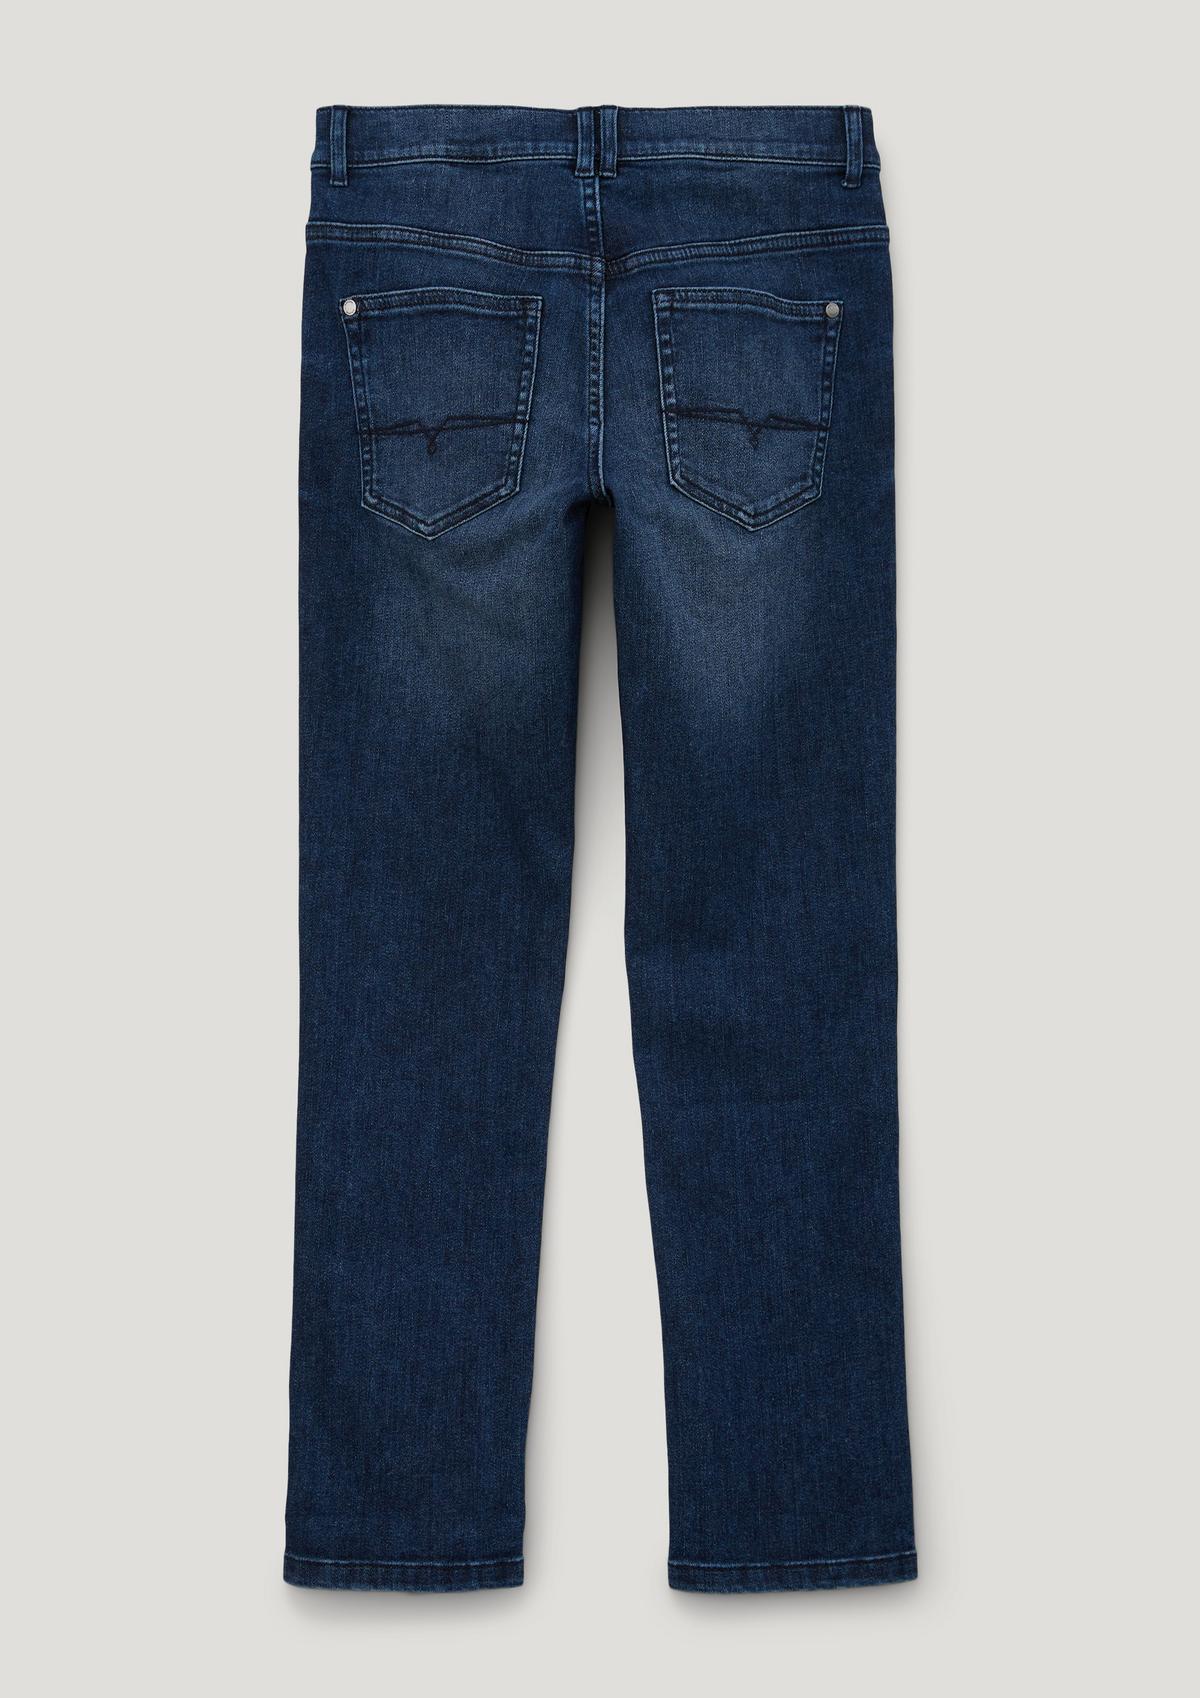 s.Oliver Seattle: Width-adjustable jeans